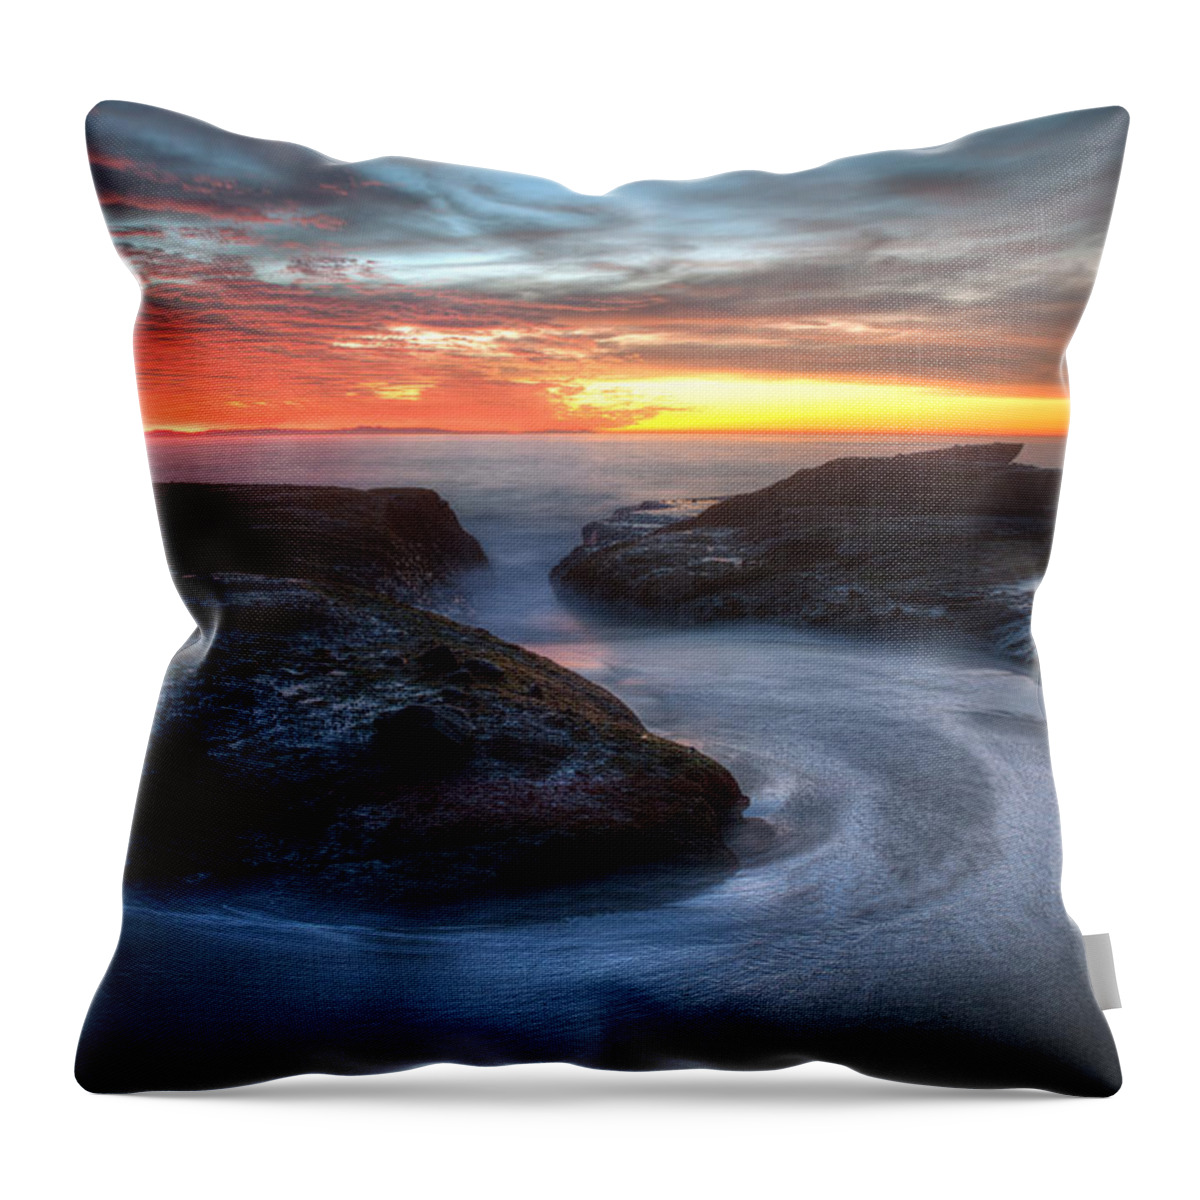 Laguna Beach Throw Pillow featuring the photograph Path to the Sea by Cliff Wassmann